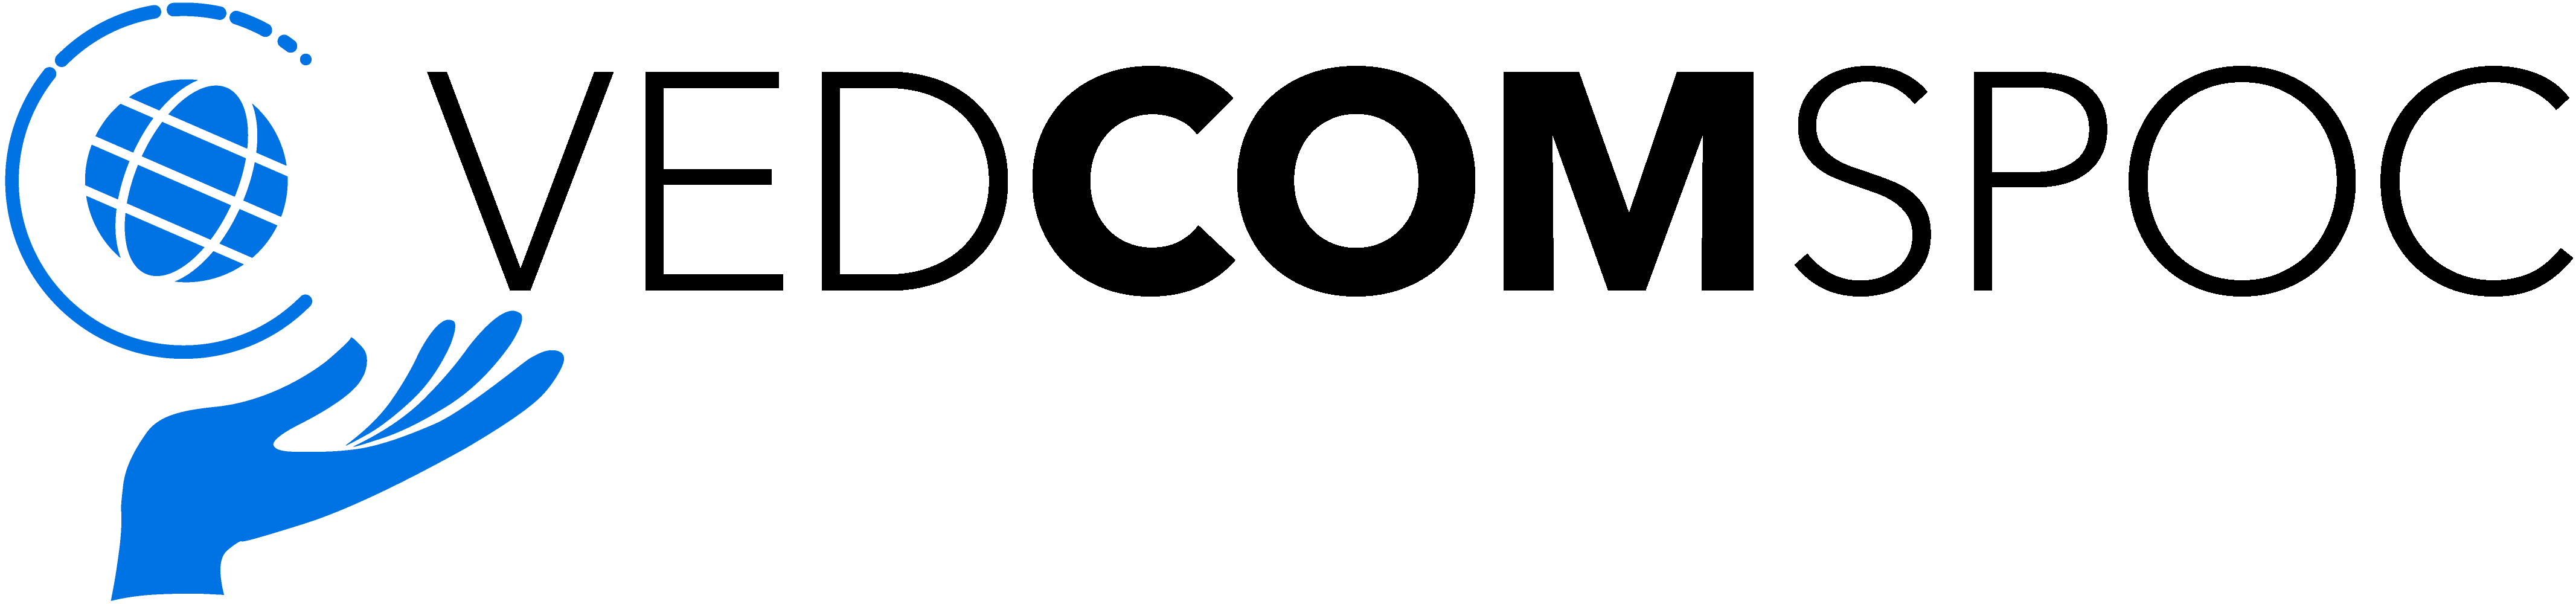 VEDCOMSPOC logo